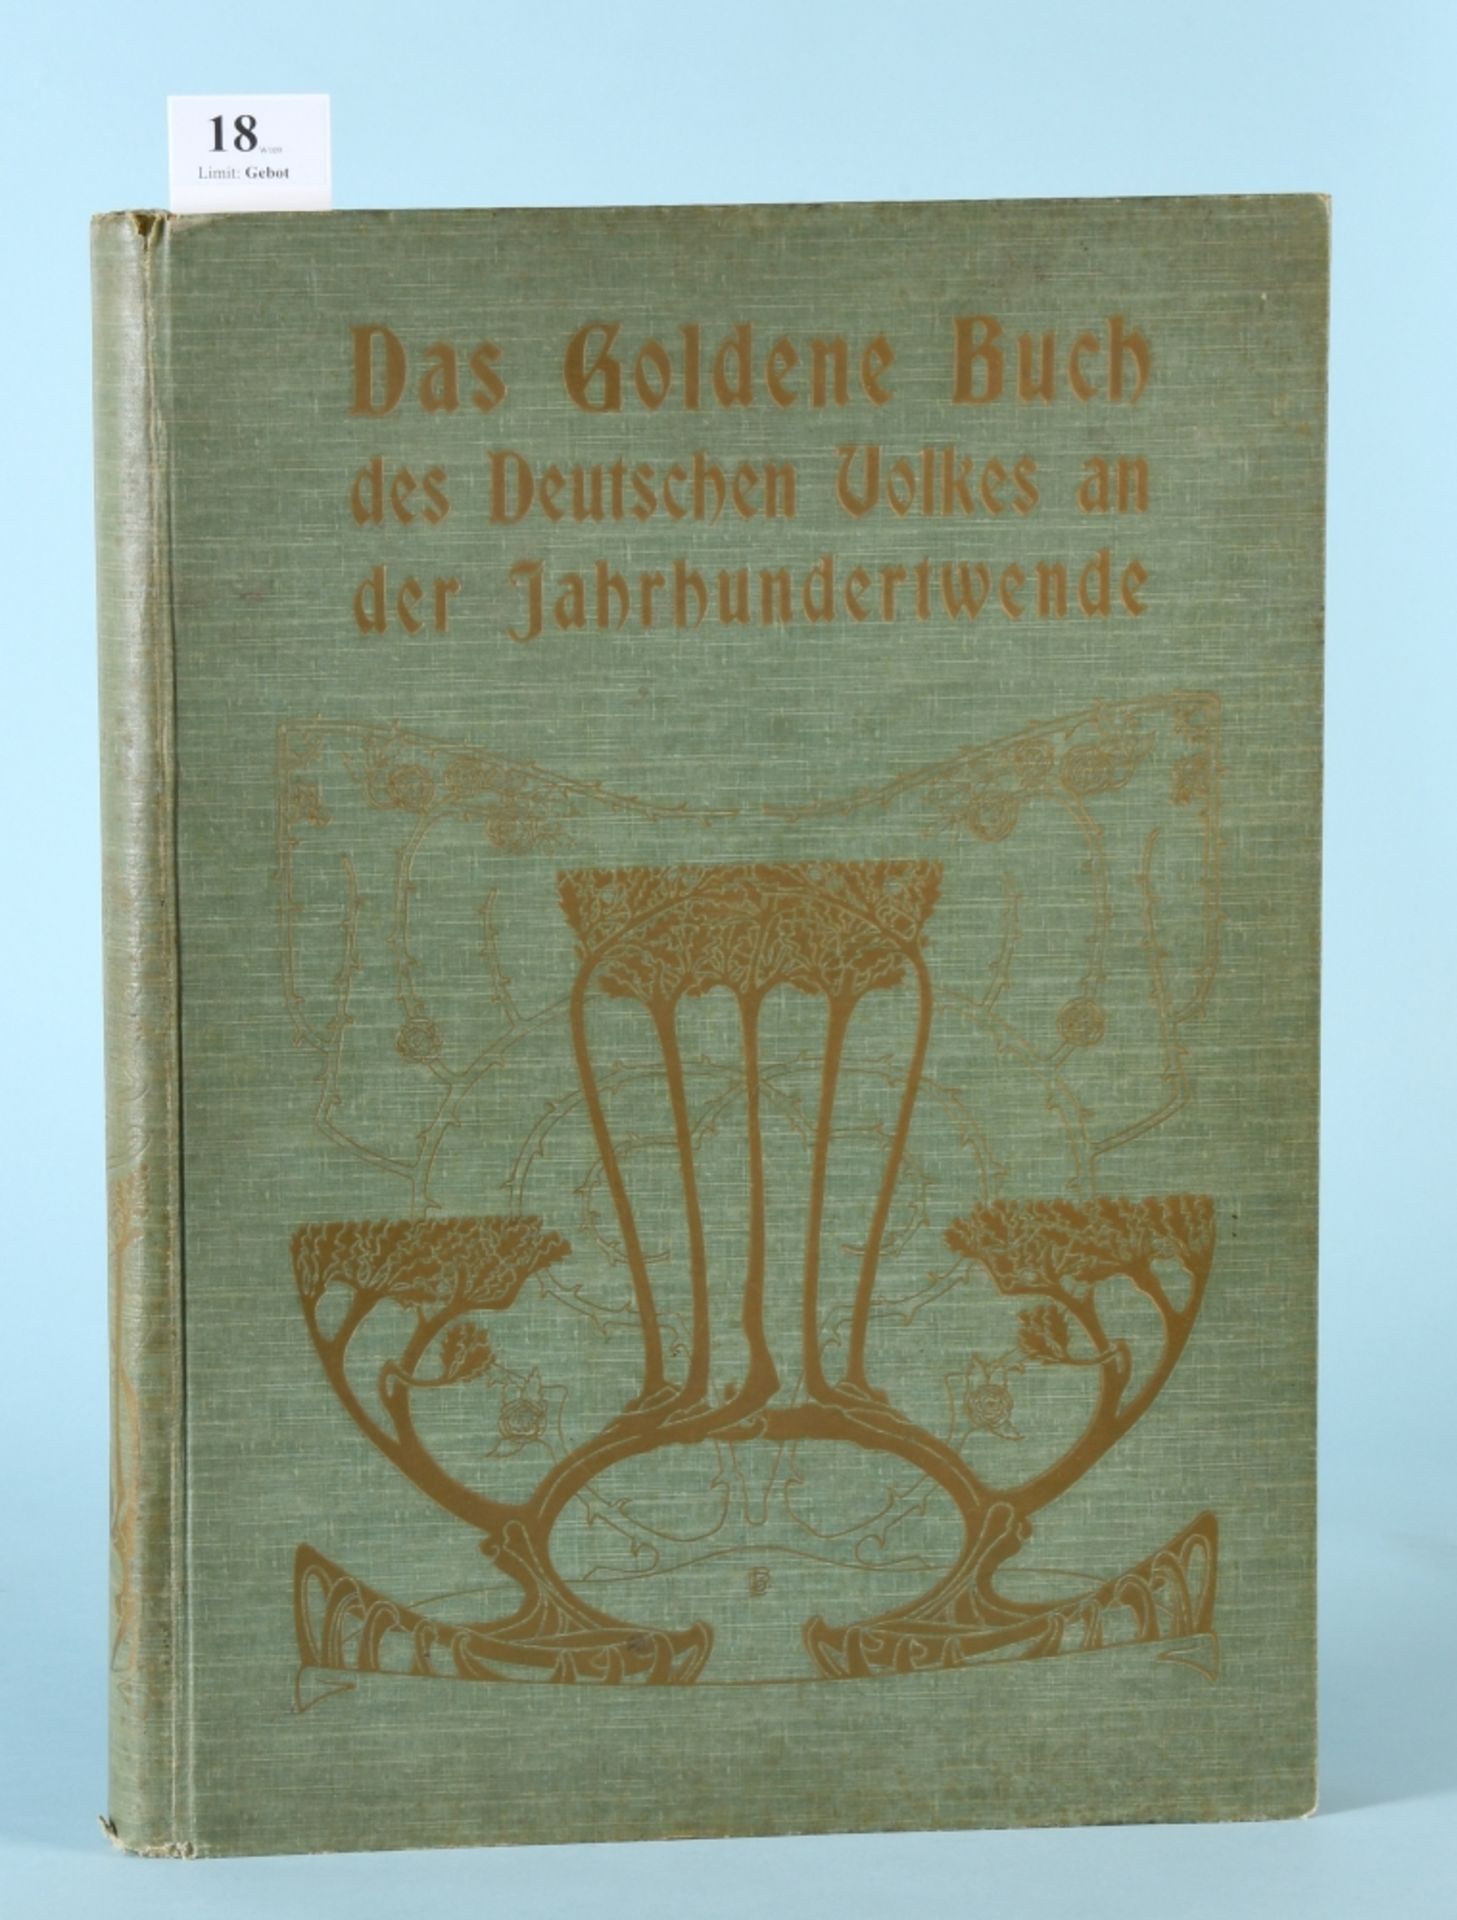 Das goldene Buch des Deutschen Volkes an der Jahrhundertwende